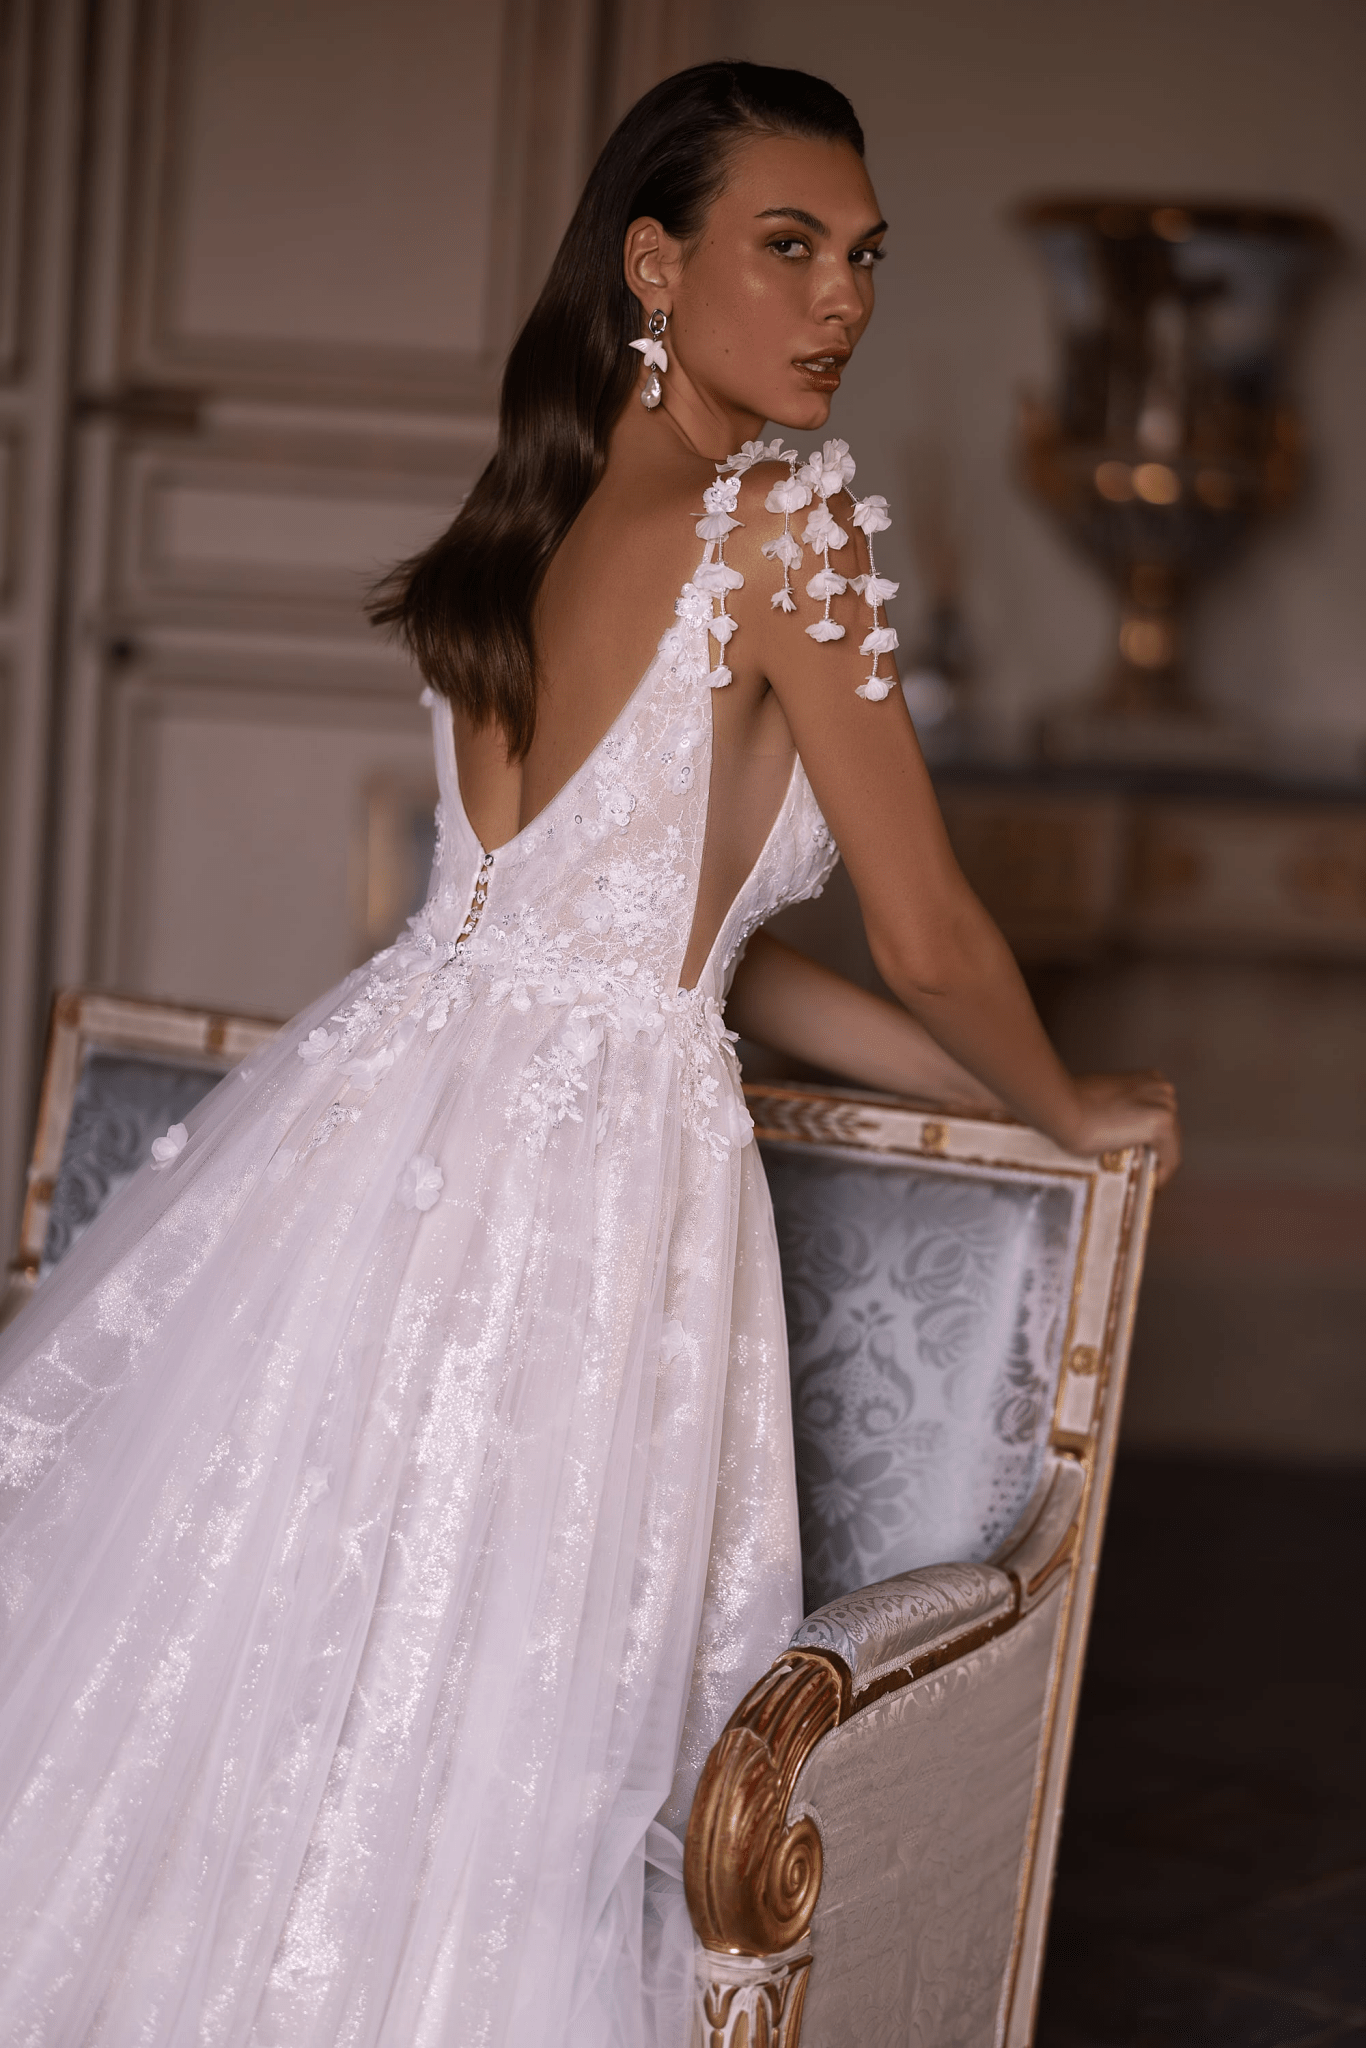 Floral Wedding Dress and Embellished Wedding Dress with Deep V-Neck - Elegant Wedding Gown with Embellished Straps Plus Size - WonderlandByLilian